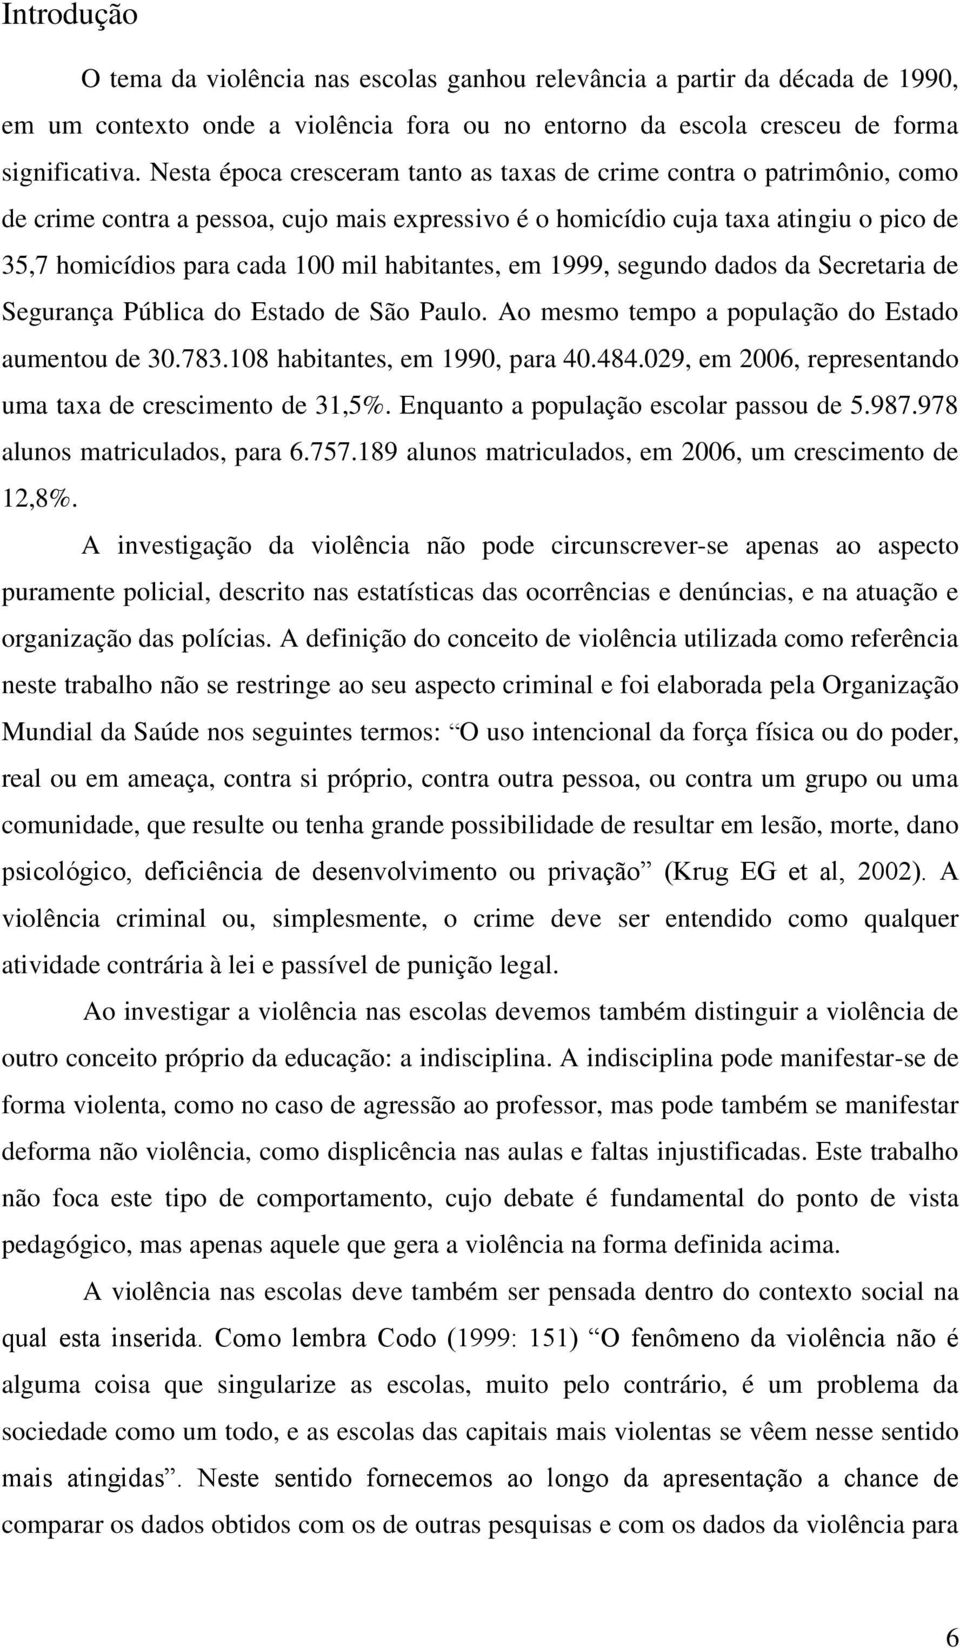 habitantes, em 1999, segundo dados da Secretaria de Segurança Pública do Estado de São Paulo. Ao mesmo tempo a população do Estado aumentou de 30.783.108 habitantes, em 1990, para 40.484.